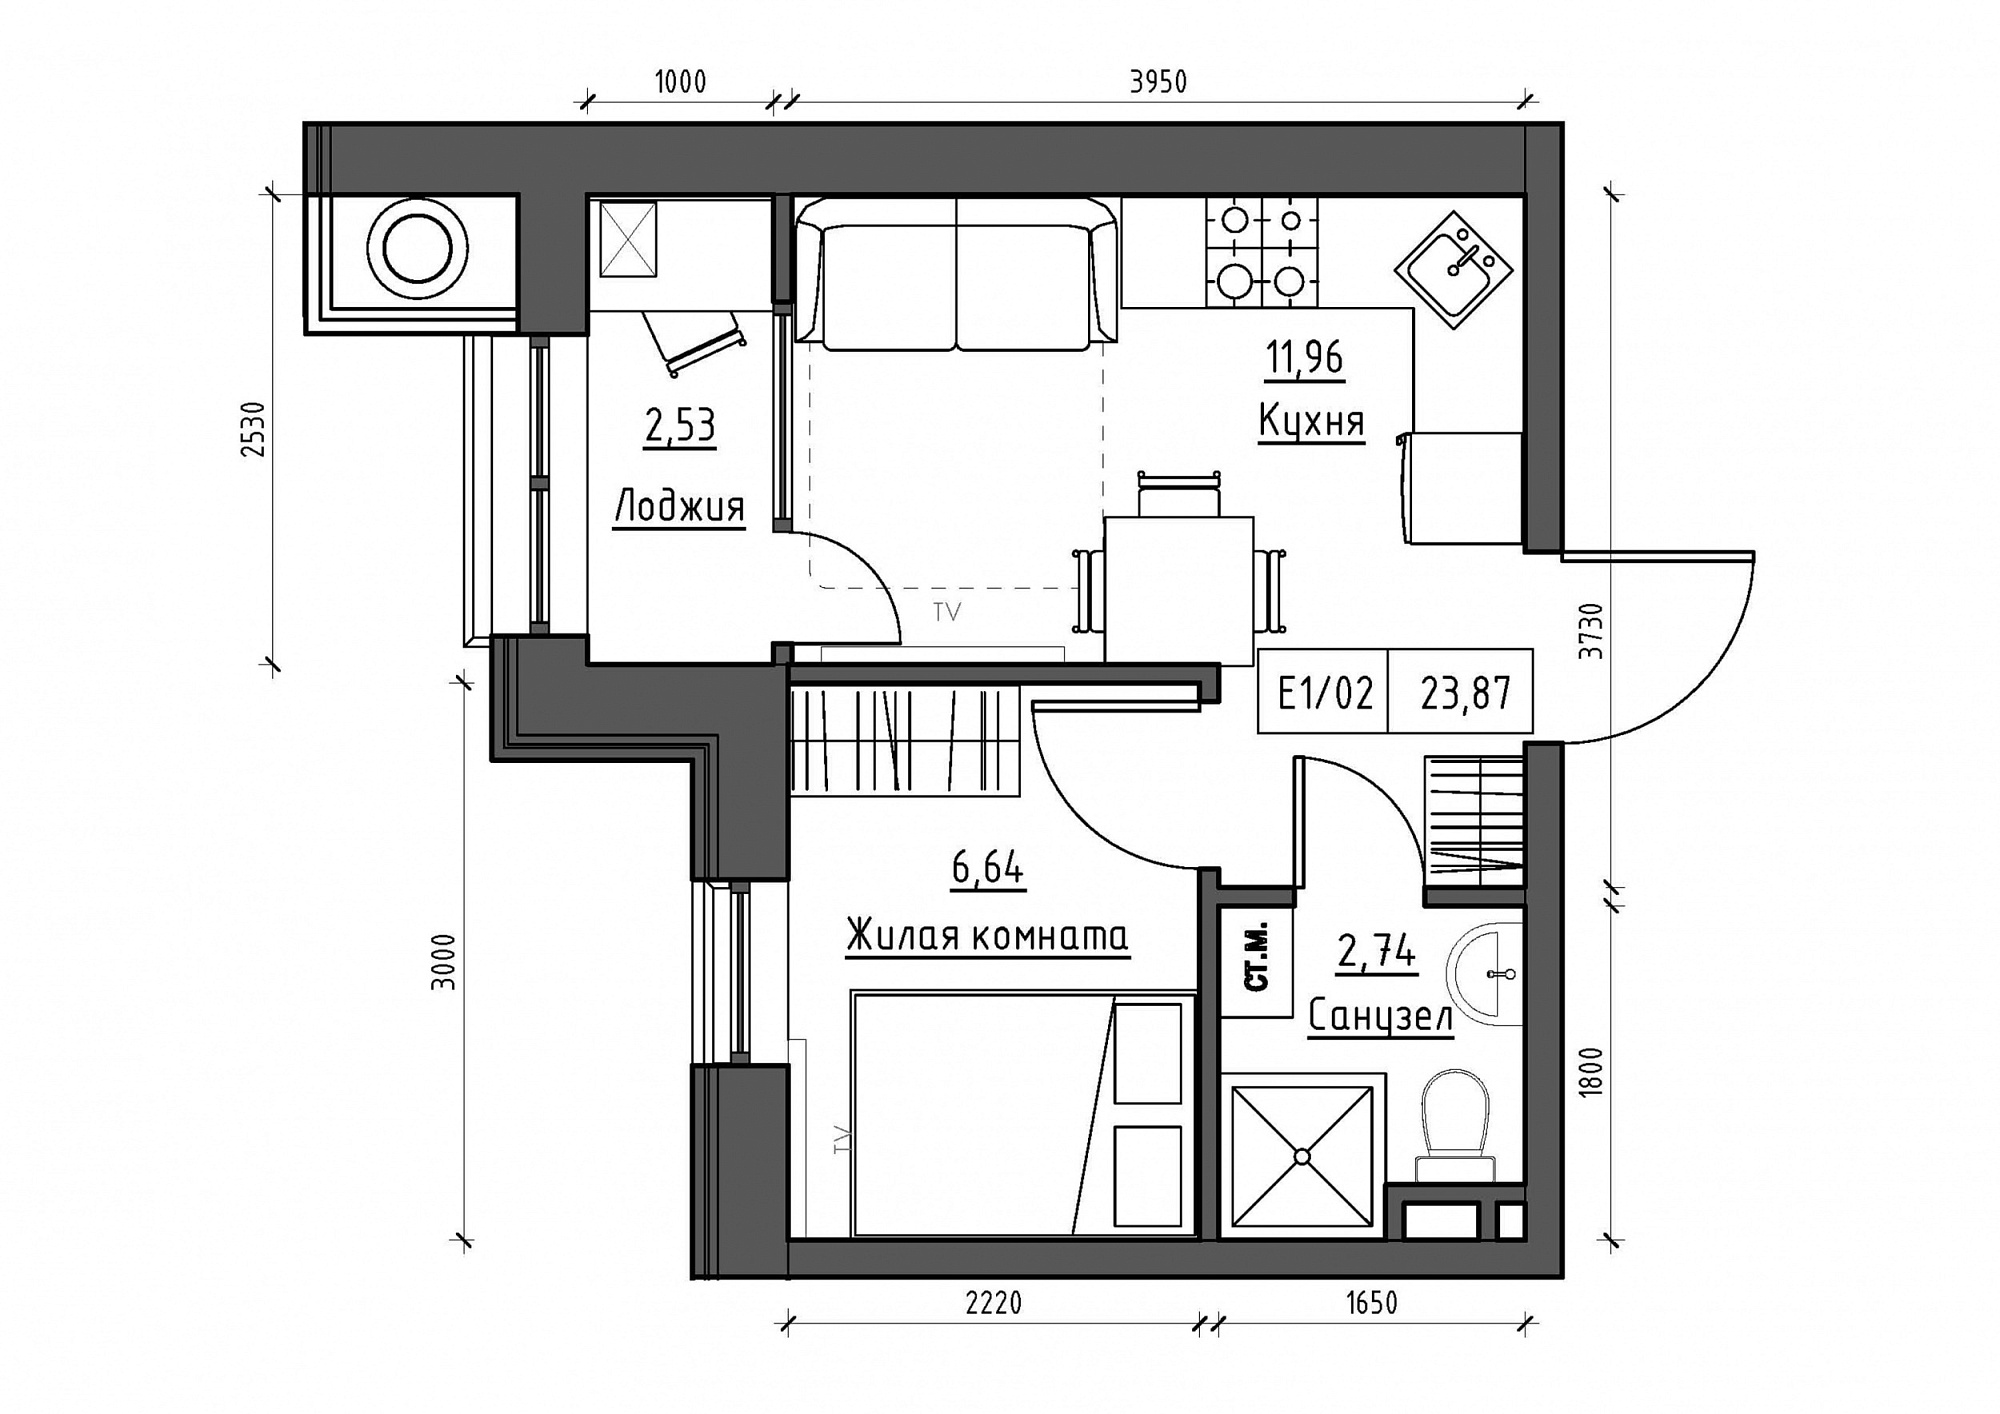 Планування 1-к квартира площею 23.87м2, KS-011-04/0001.